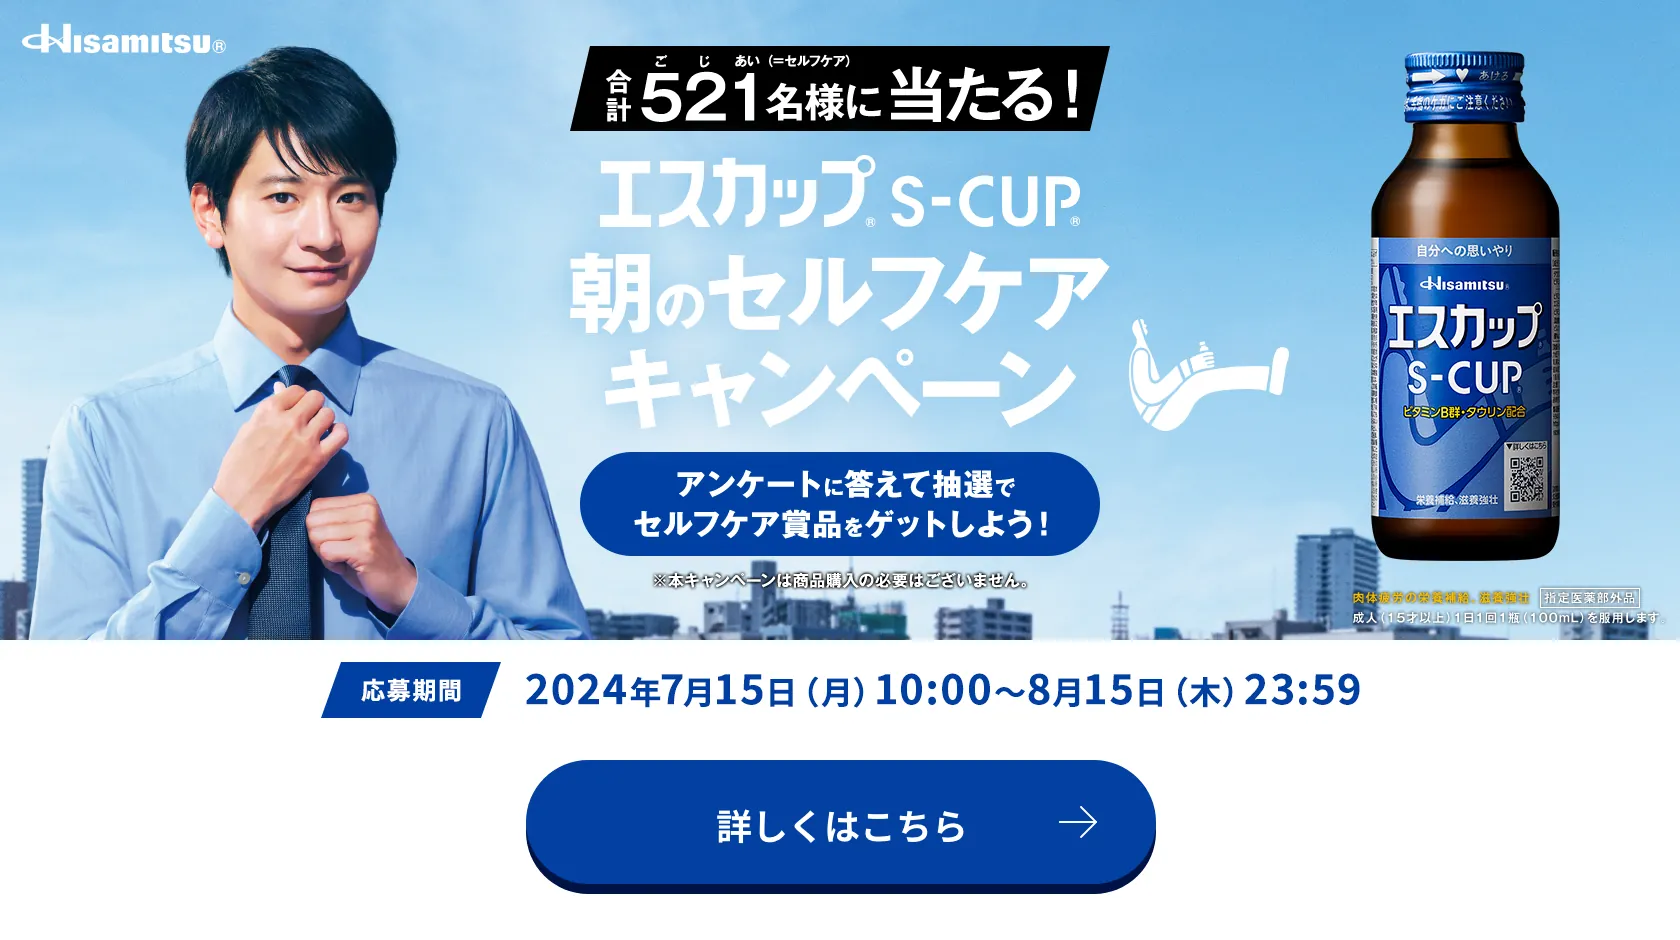 Hisamitsu® 合計521名様に当たる！ エスカップ® S-CUP® 朝のセルフケアキャンペーン アンケートに答えて抽選でセルフケア賞品をゲットしよう！ ※本キャンペーンは商品購入の必要はございません。 応募期間：2024年7月15日(月)10:00〜8月15日(木)23:59 詳しくはこちら